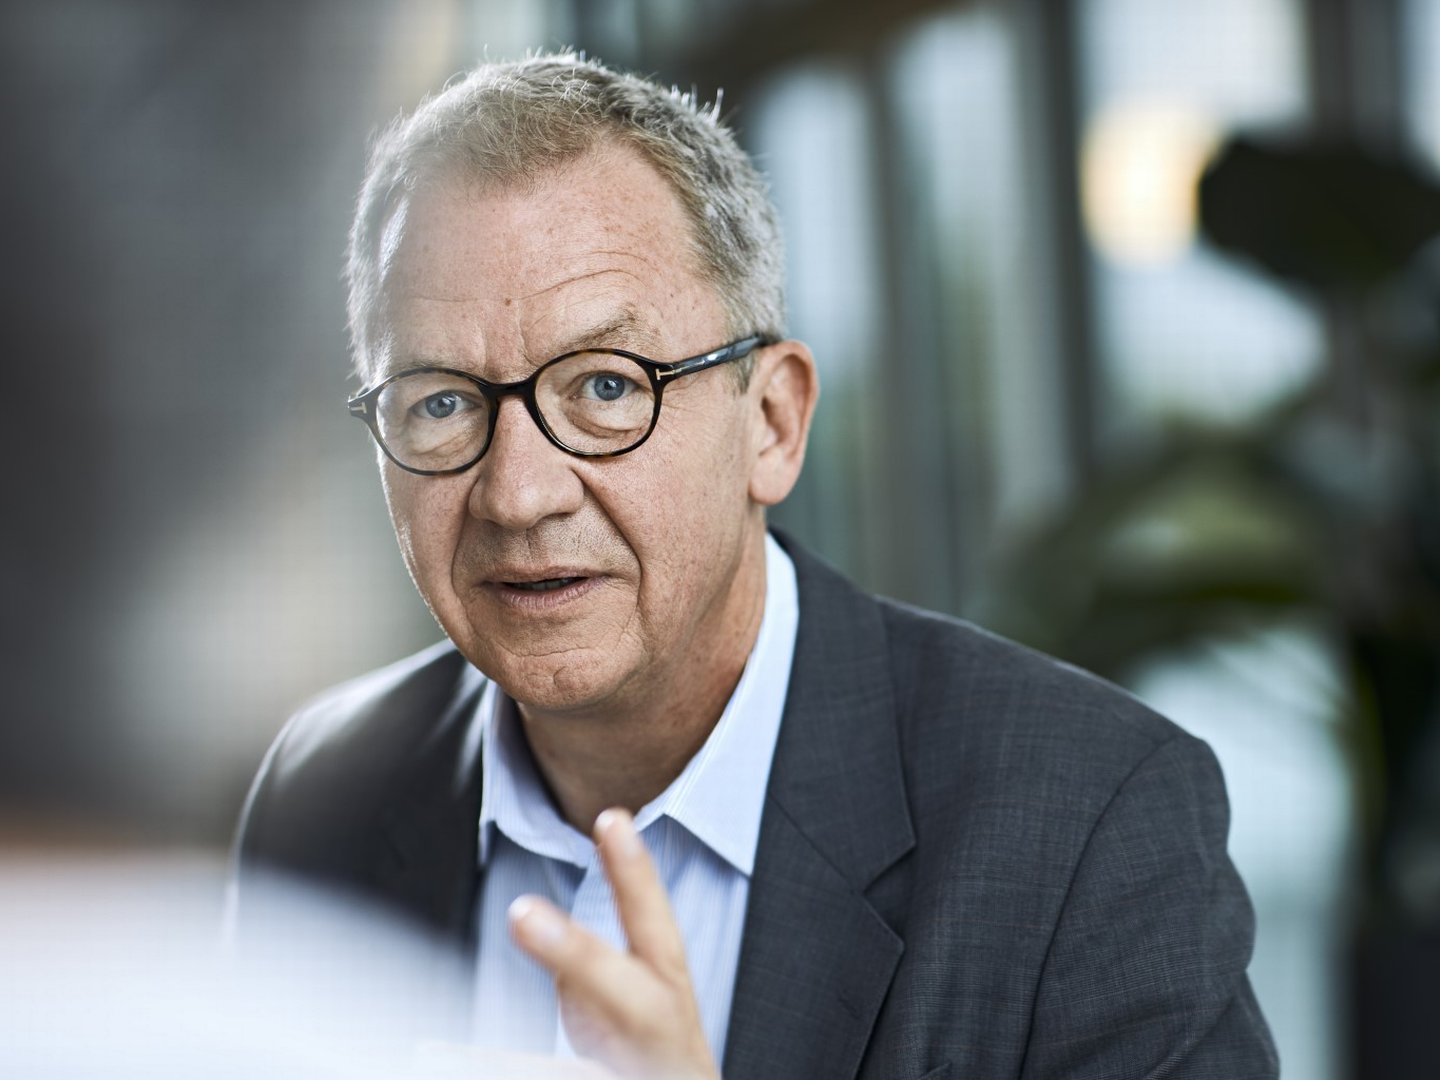 Administrerende direktør Idar Kreutzer i Finans Norge er opptatt av at hvitvasking og økonomisk kriminalitet er en del av samfunnsoppdraget til finansnæringen. | Foto: Kilian Munch/Finans Norge